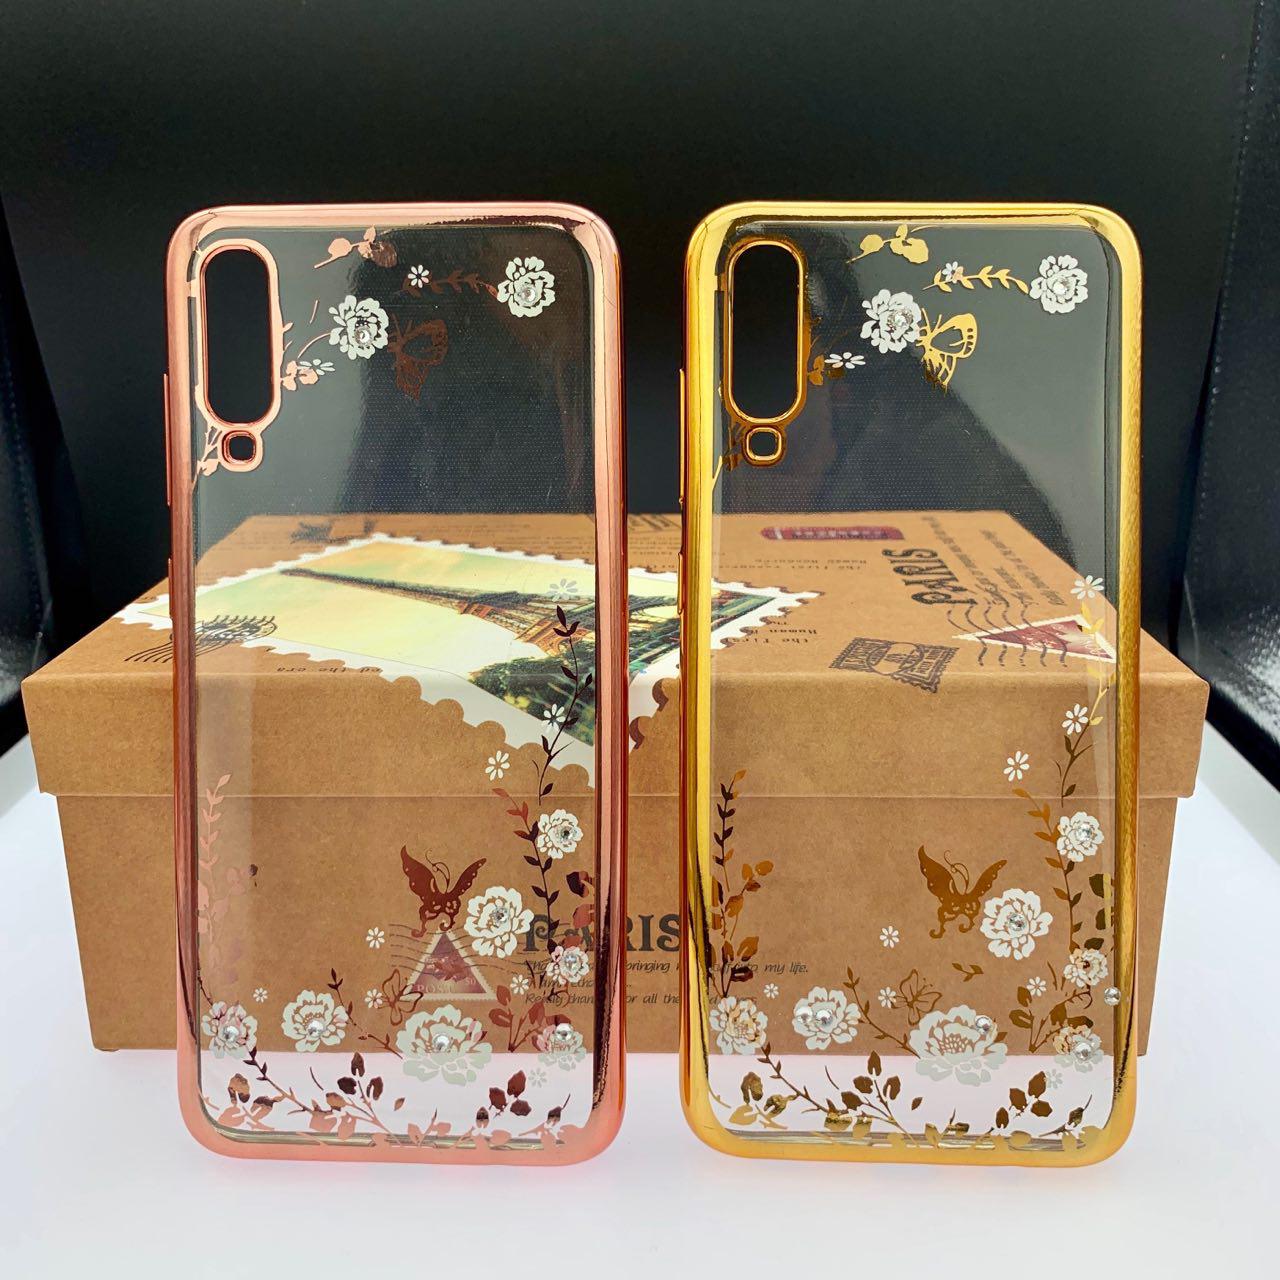 Чехол-накладка для SAMSUNG Galaxy A70 2019 (SM-A705) силиконовая, принт бабочки и цветы со стразами, цвет розовое золото.